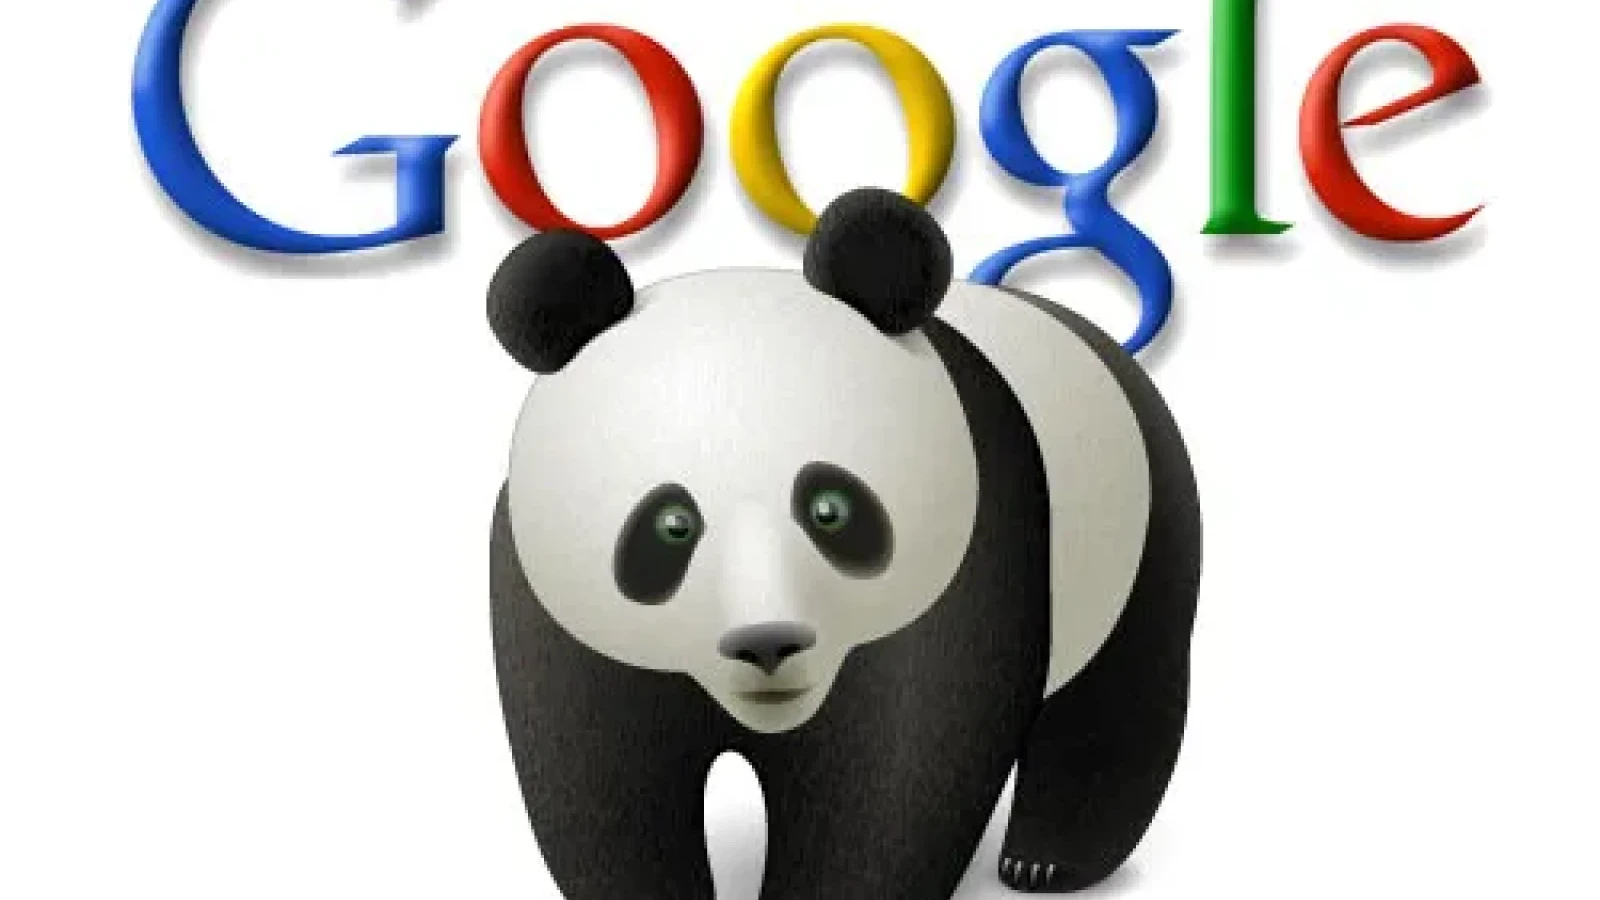 Обновление алгоритма Панды. Google Panda 4.1: как дальше жить?